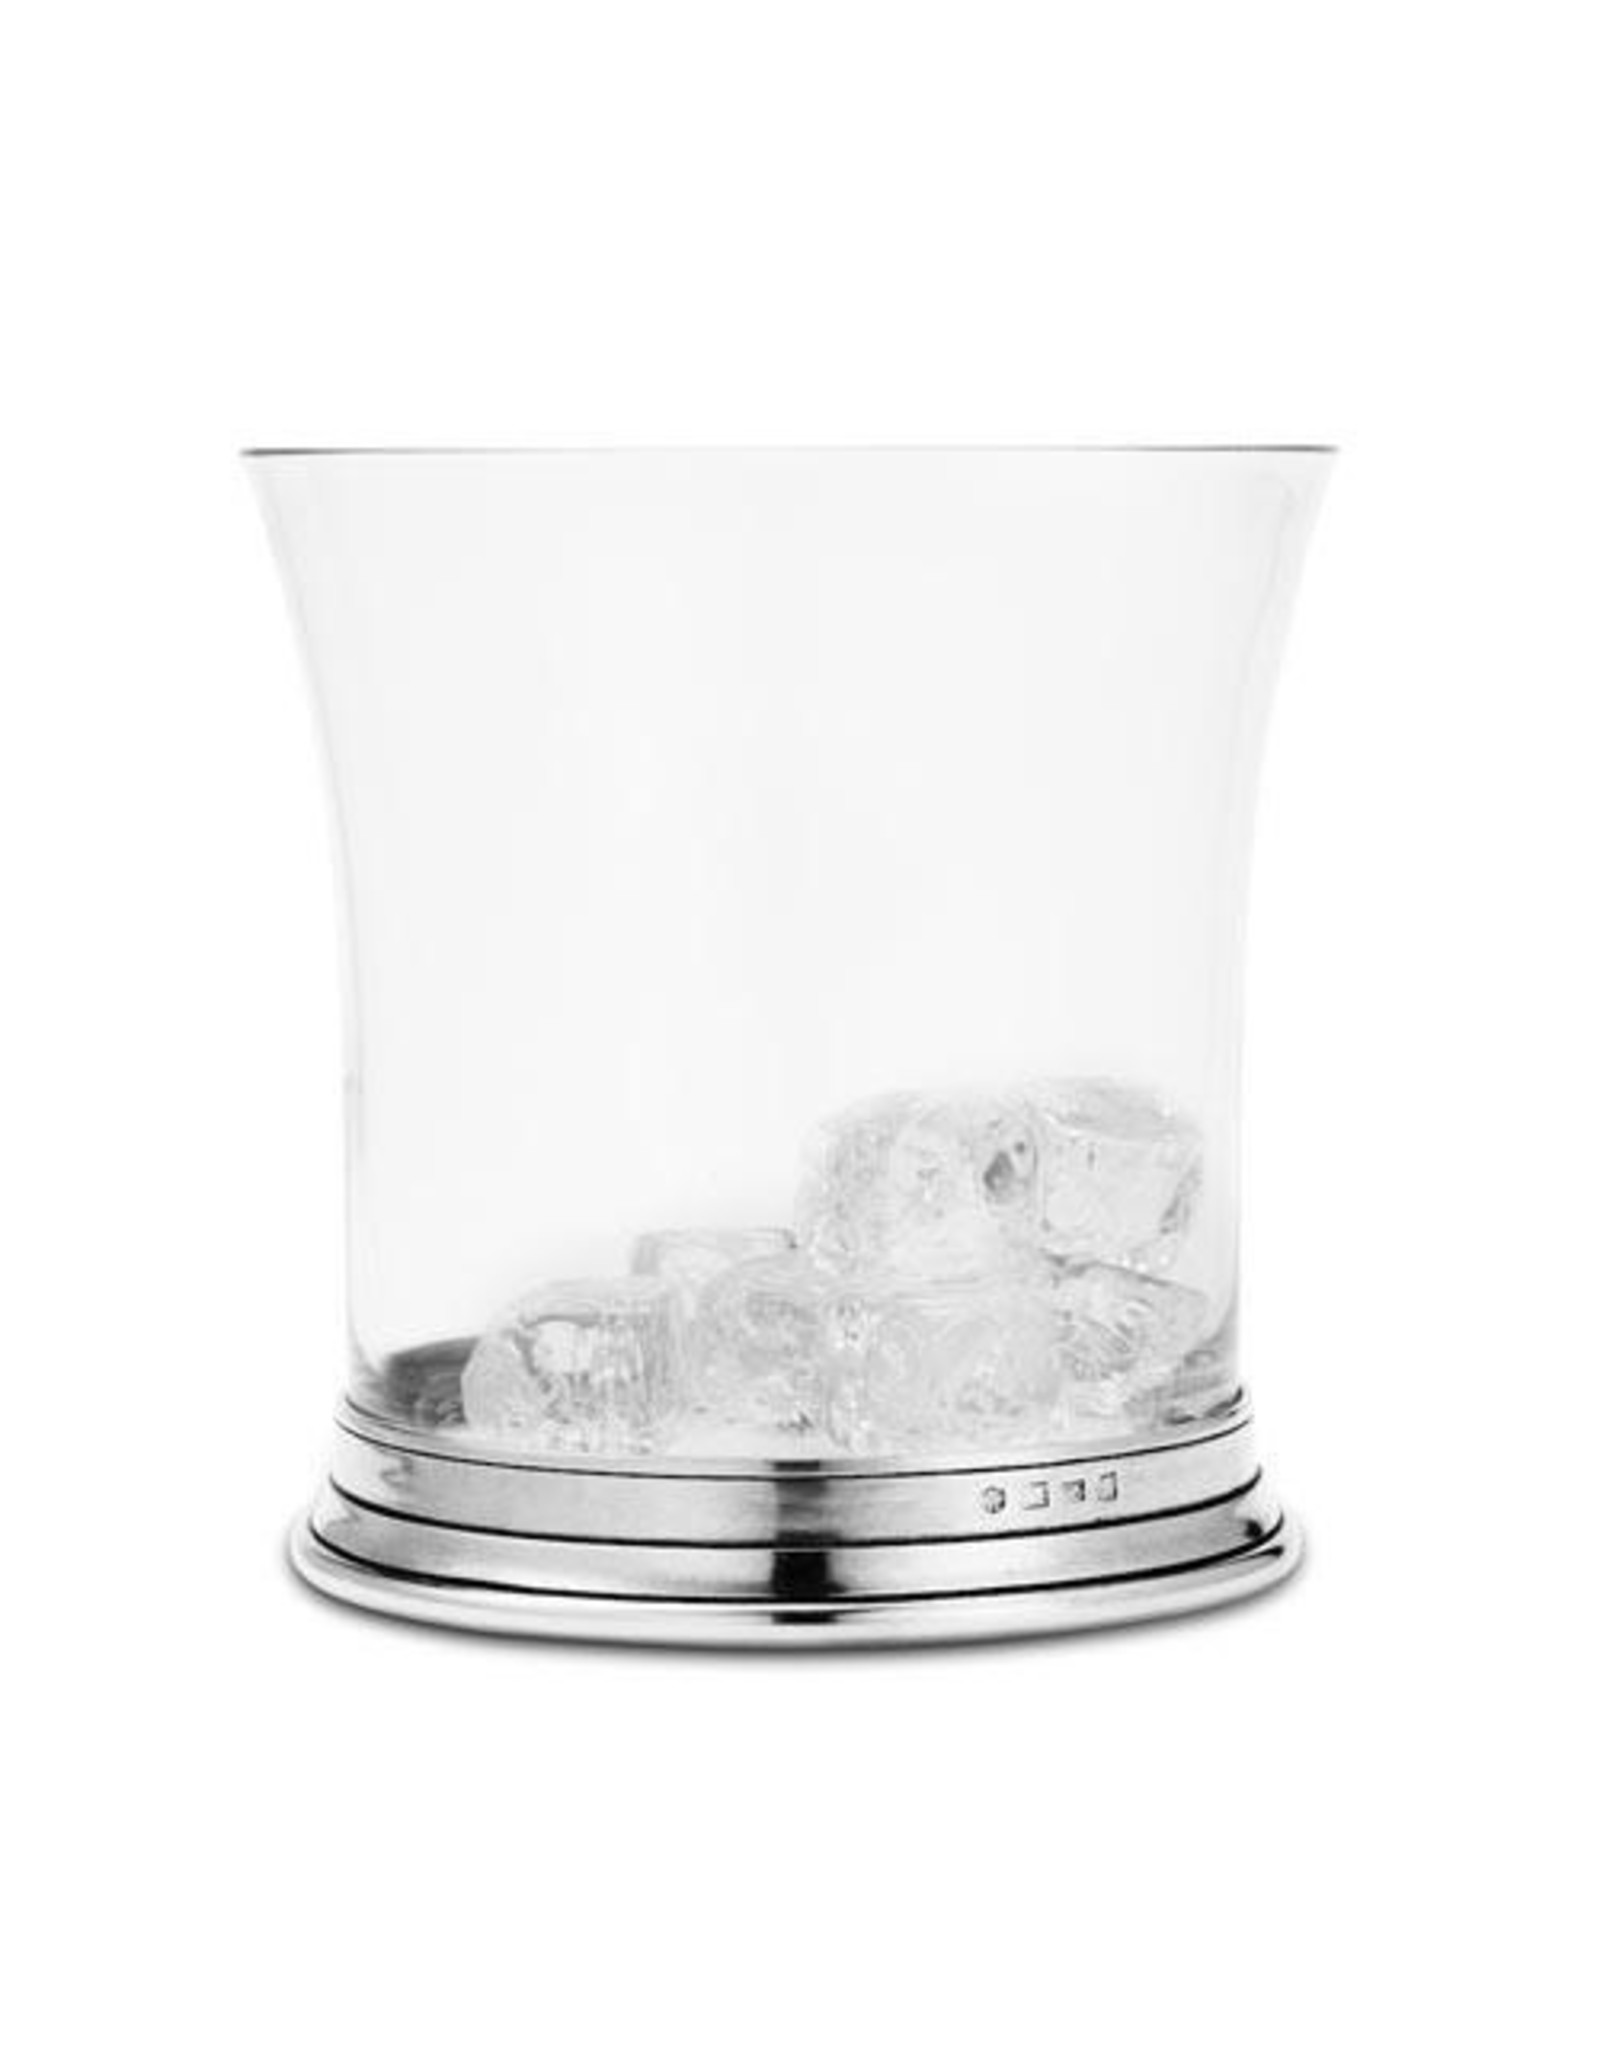 Crystal Ice Bucket w/ Handles